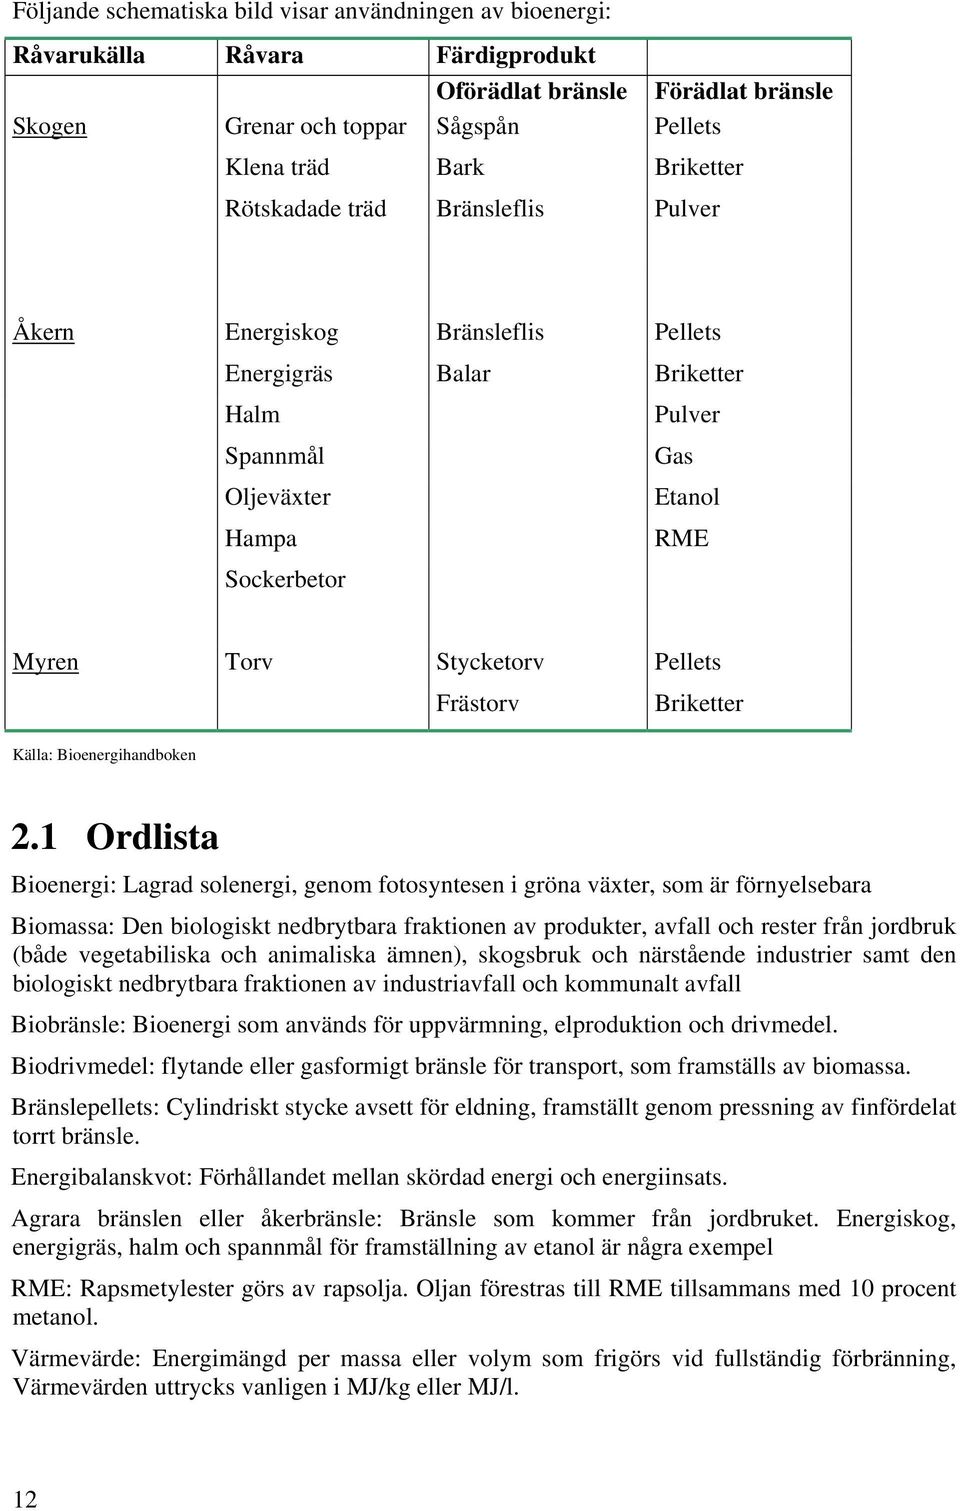 Frästorv Briketter Källa: Bioenergihandboken 2.